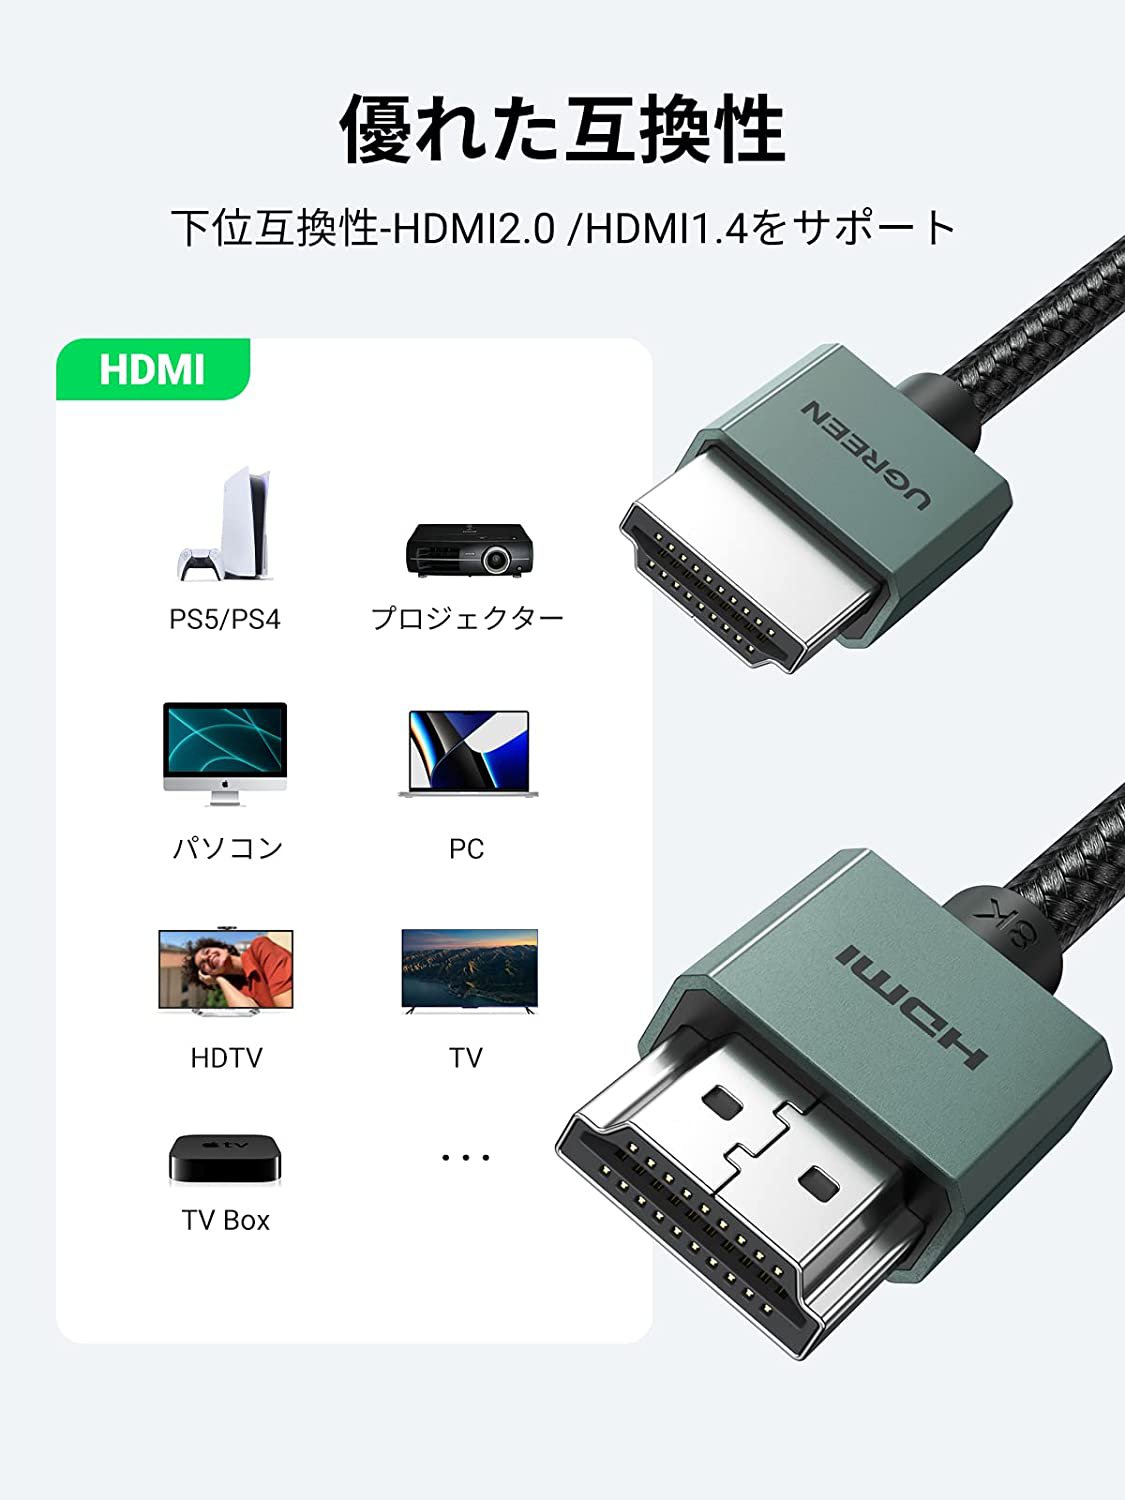 Cáp HDMI 2.1 siêu mỏng dài 1M hỗ trợ 8K Ugreen 90382